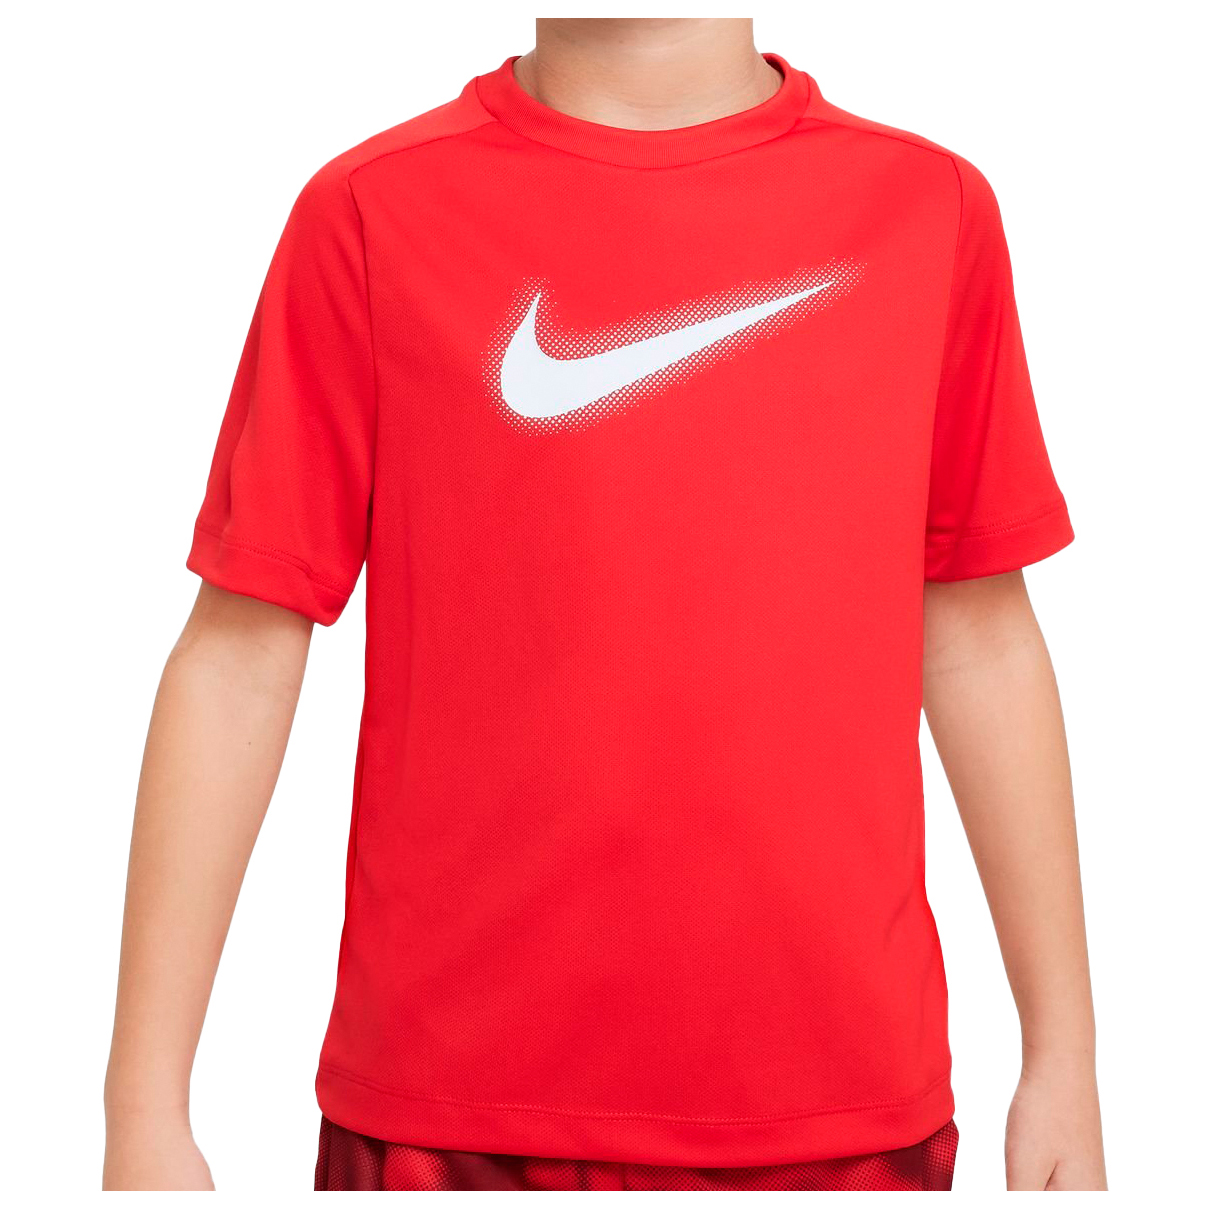 Функциональная рубашка Nike Kid's Dri FIT Icon T Shirt, цвет University Red/White спортивная футболка dri fit academy 23 nike цвет university red gym red white